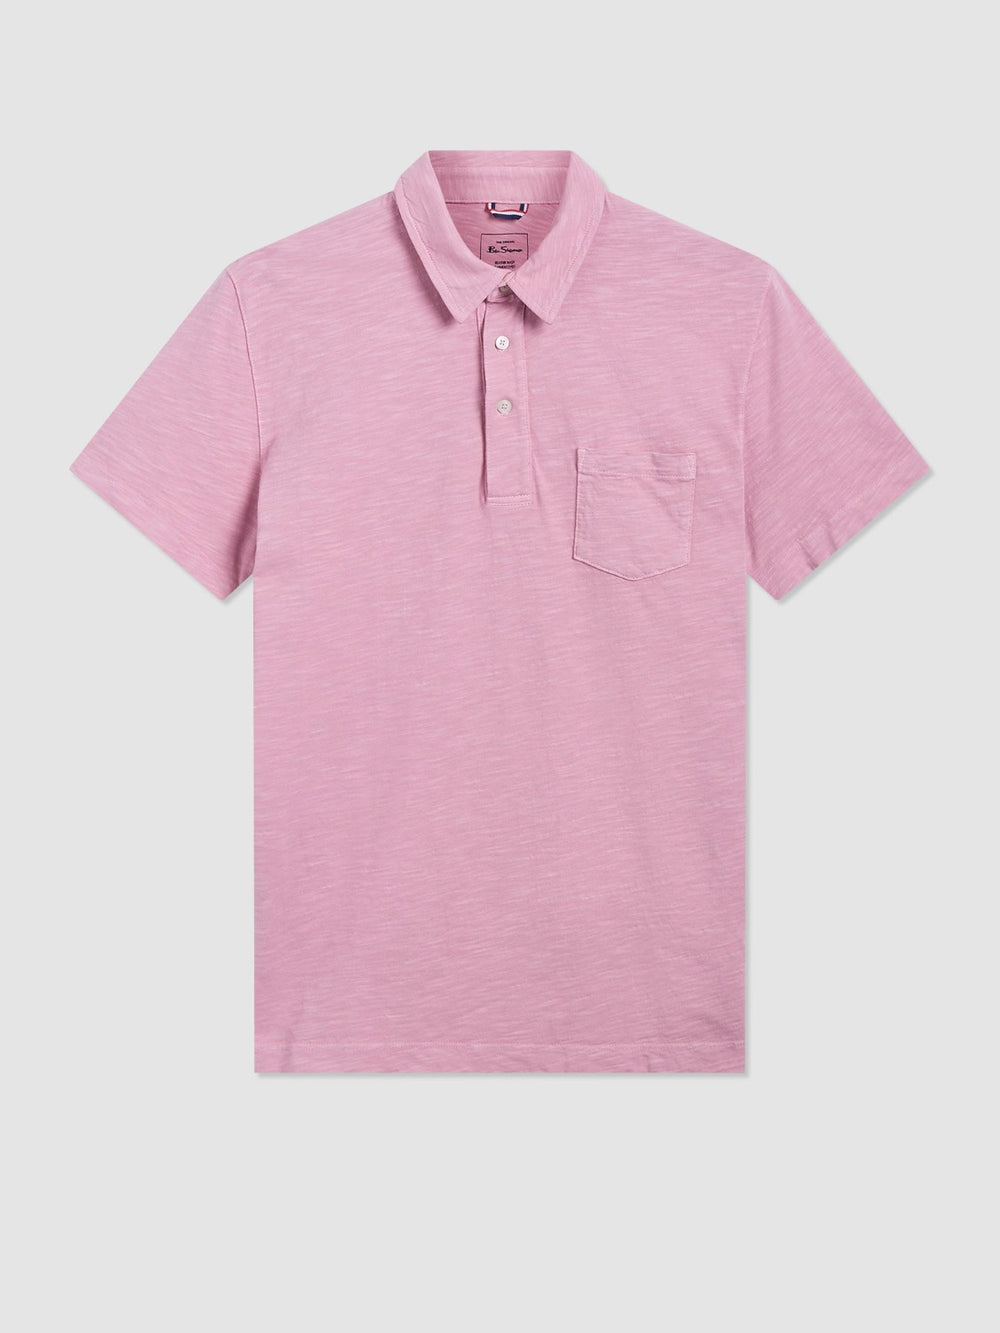 Garment Dye Beatnik Polo - Washed Pink